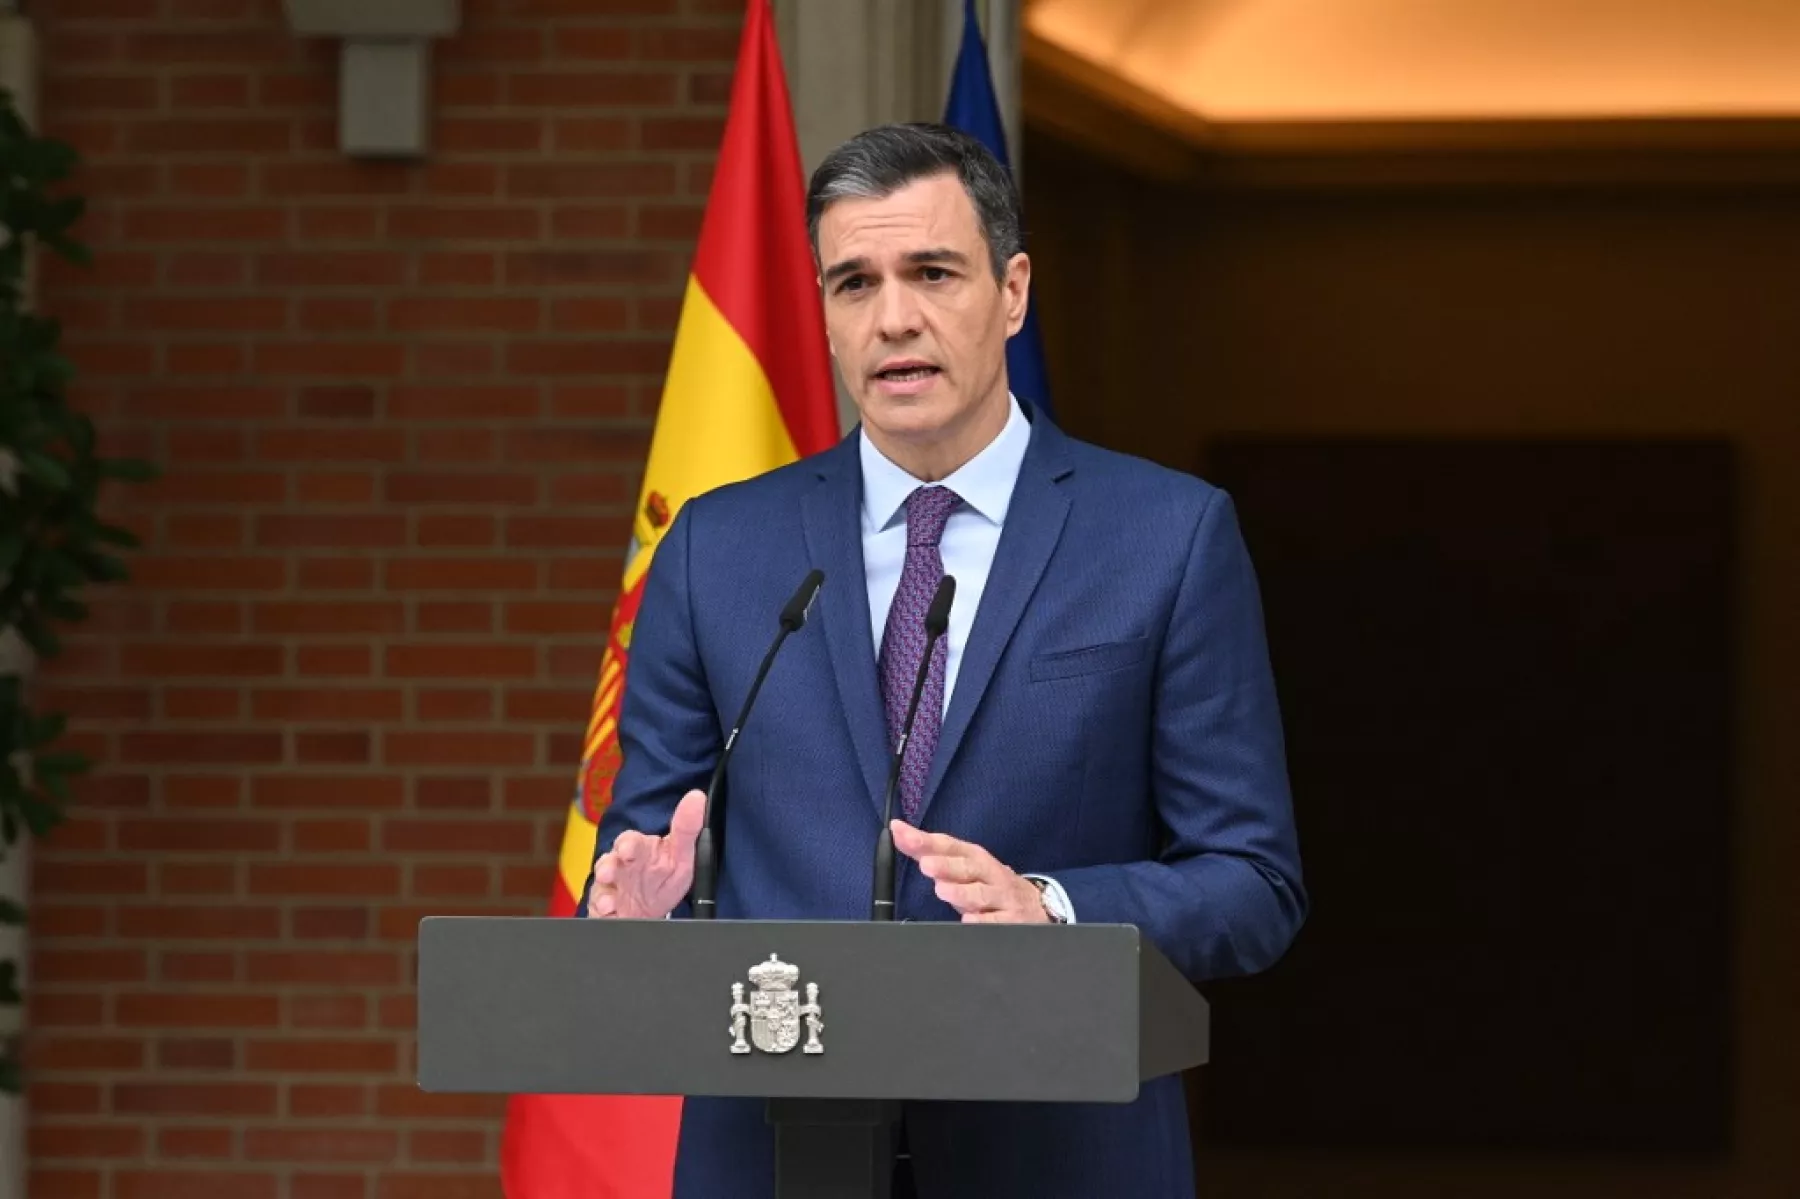 El Socialista Pedro Sánchez vuelve a ser elegido presidente del Gobierno Español por tercer mandato consecutivo